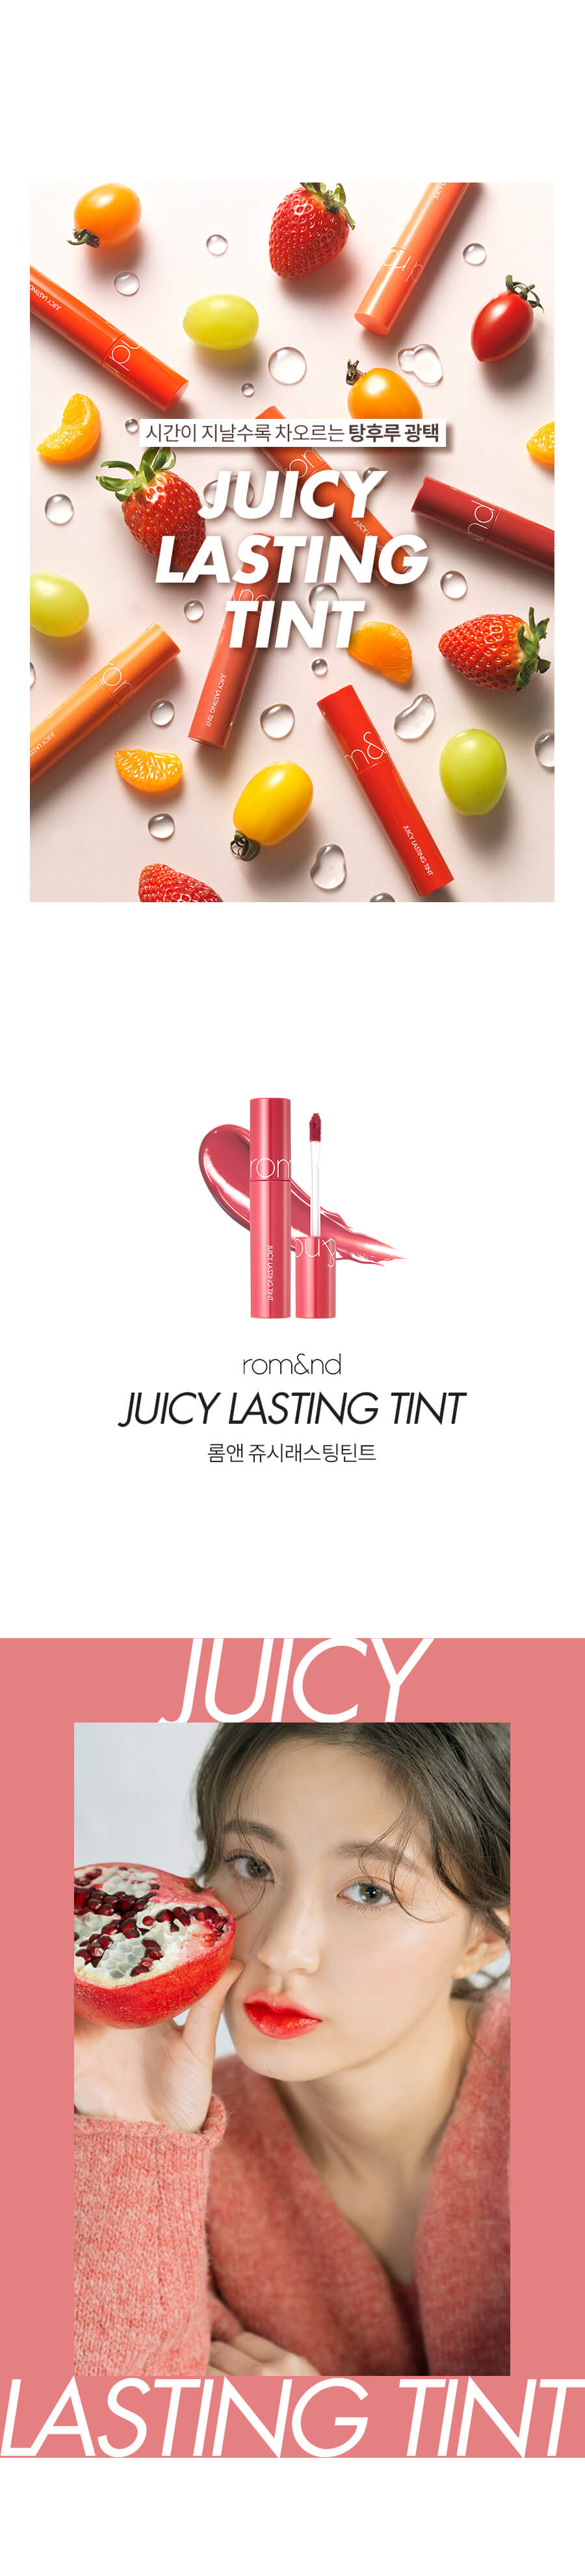 rom&nd, ลิป rom&nd, rom&nd Juicy Lasting Tint, rom&nd Juicy Lasting Tint รีวิว, rom&nd Juicy Lasting Tint ราคา, rom&nd Juicy Lasting Tint สีไหนสวย, rom&nd Juicy Lasting Tint 5.5 g. #06 ทินท์เนื้อชุ่มฉ่ำ ให้ความฉ่ำวาวสุดๆ เนื้อทินท์ทาง่าย และเนียนเรียบ เกลี่ยง่าย ให้สีสันสดใสและสม่ำเสมอ, rom&nd Juicy Lasting Tint 5.5 g. #08